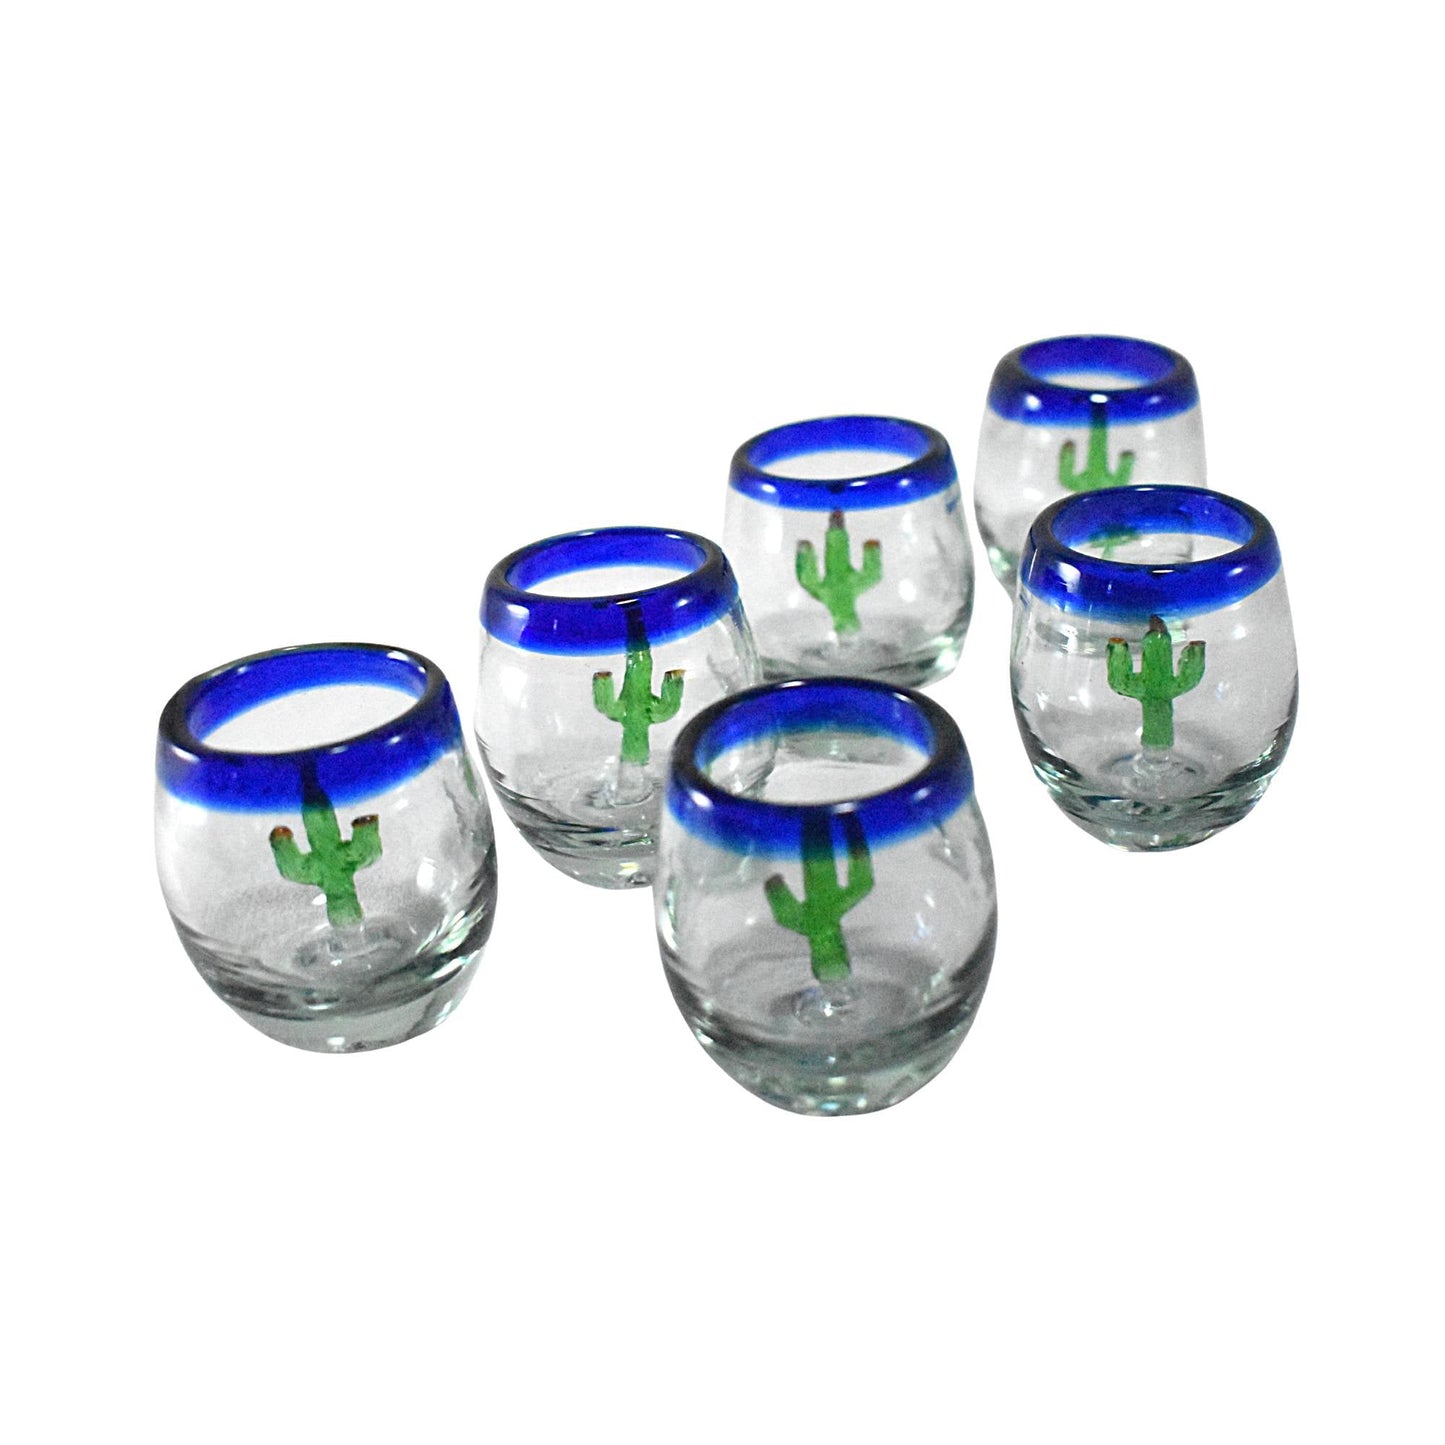 Vasos Mezcaleros | Set de 6 Piezas | Caballitos de Vidrio Soplado Artesanalmente en México (Filo Azul Cobalto C/ Cactus, Barril 2 Oz.) - MAREY -